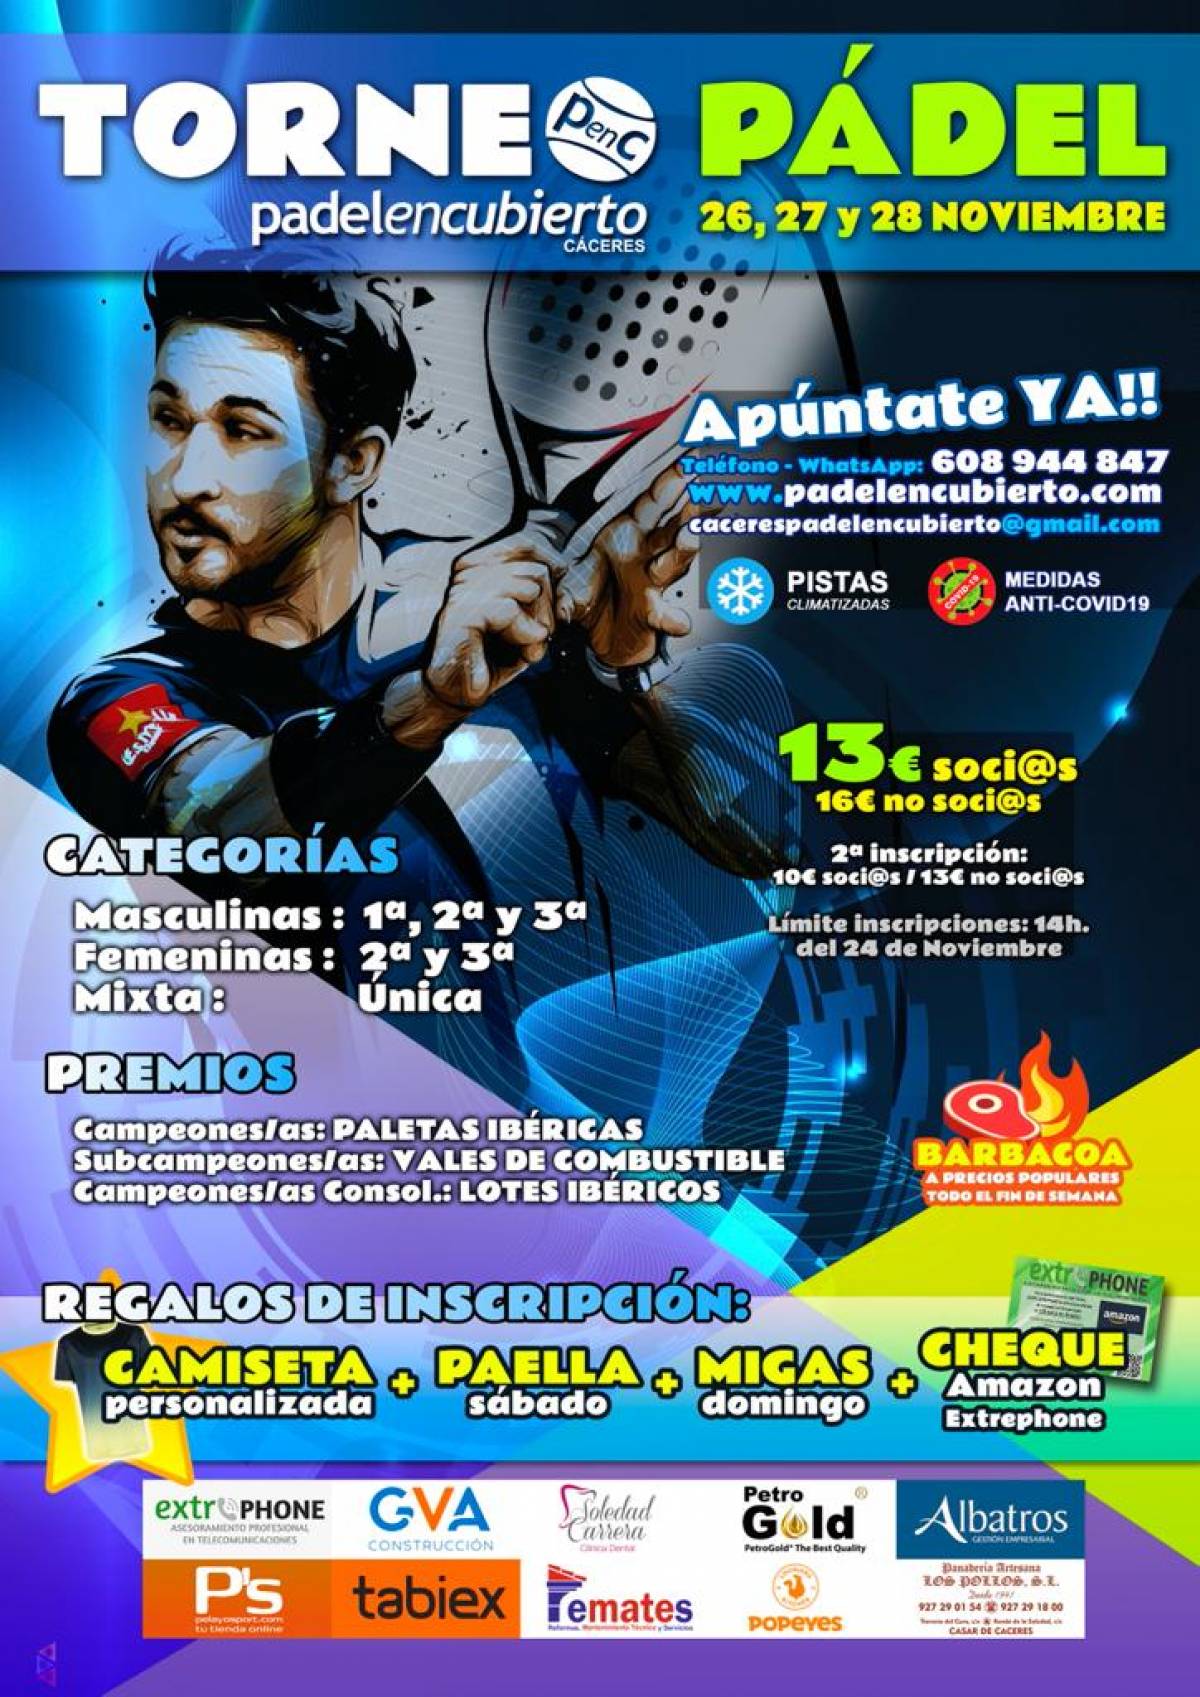 Torneo Otoño Padelencubierto Caceres 26-27 y 28 de Noviembre 